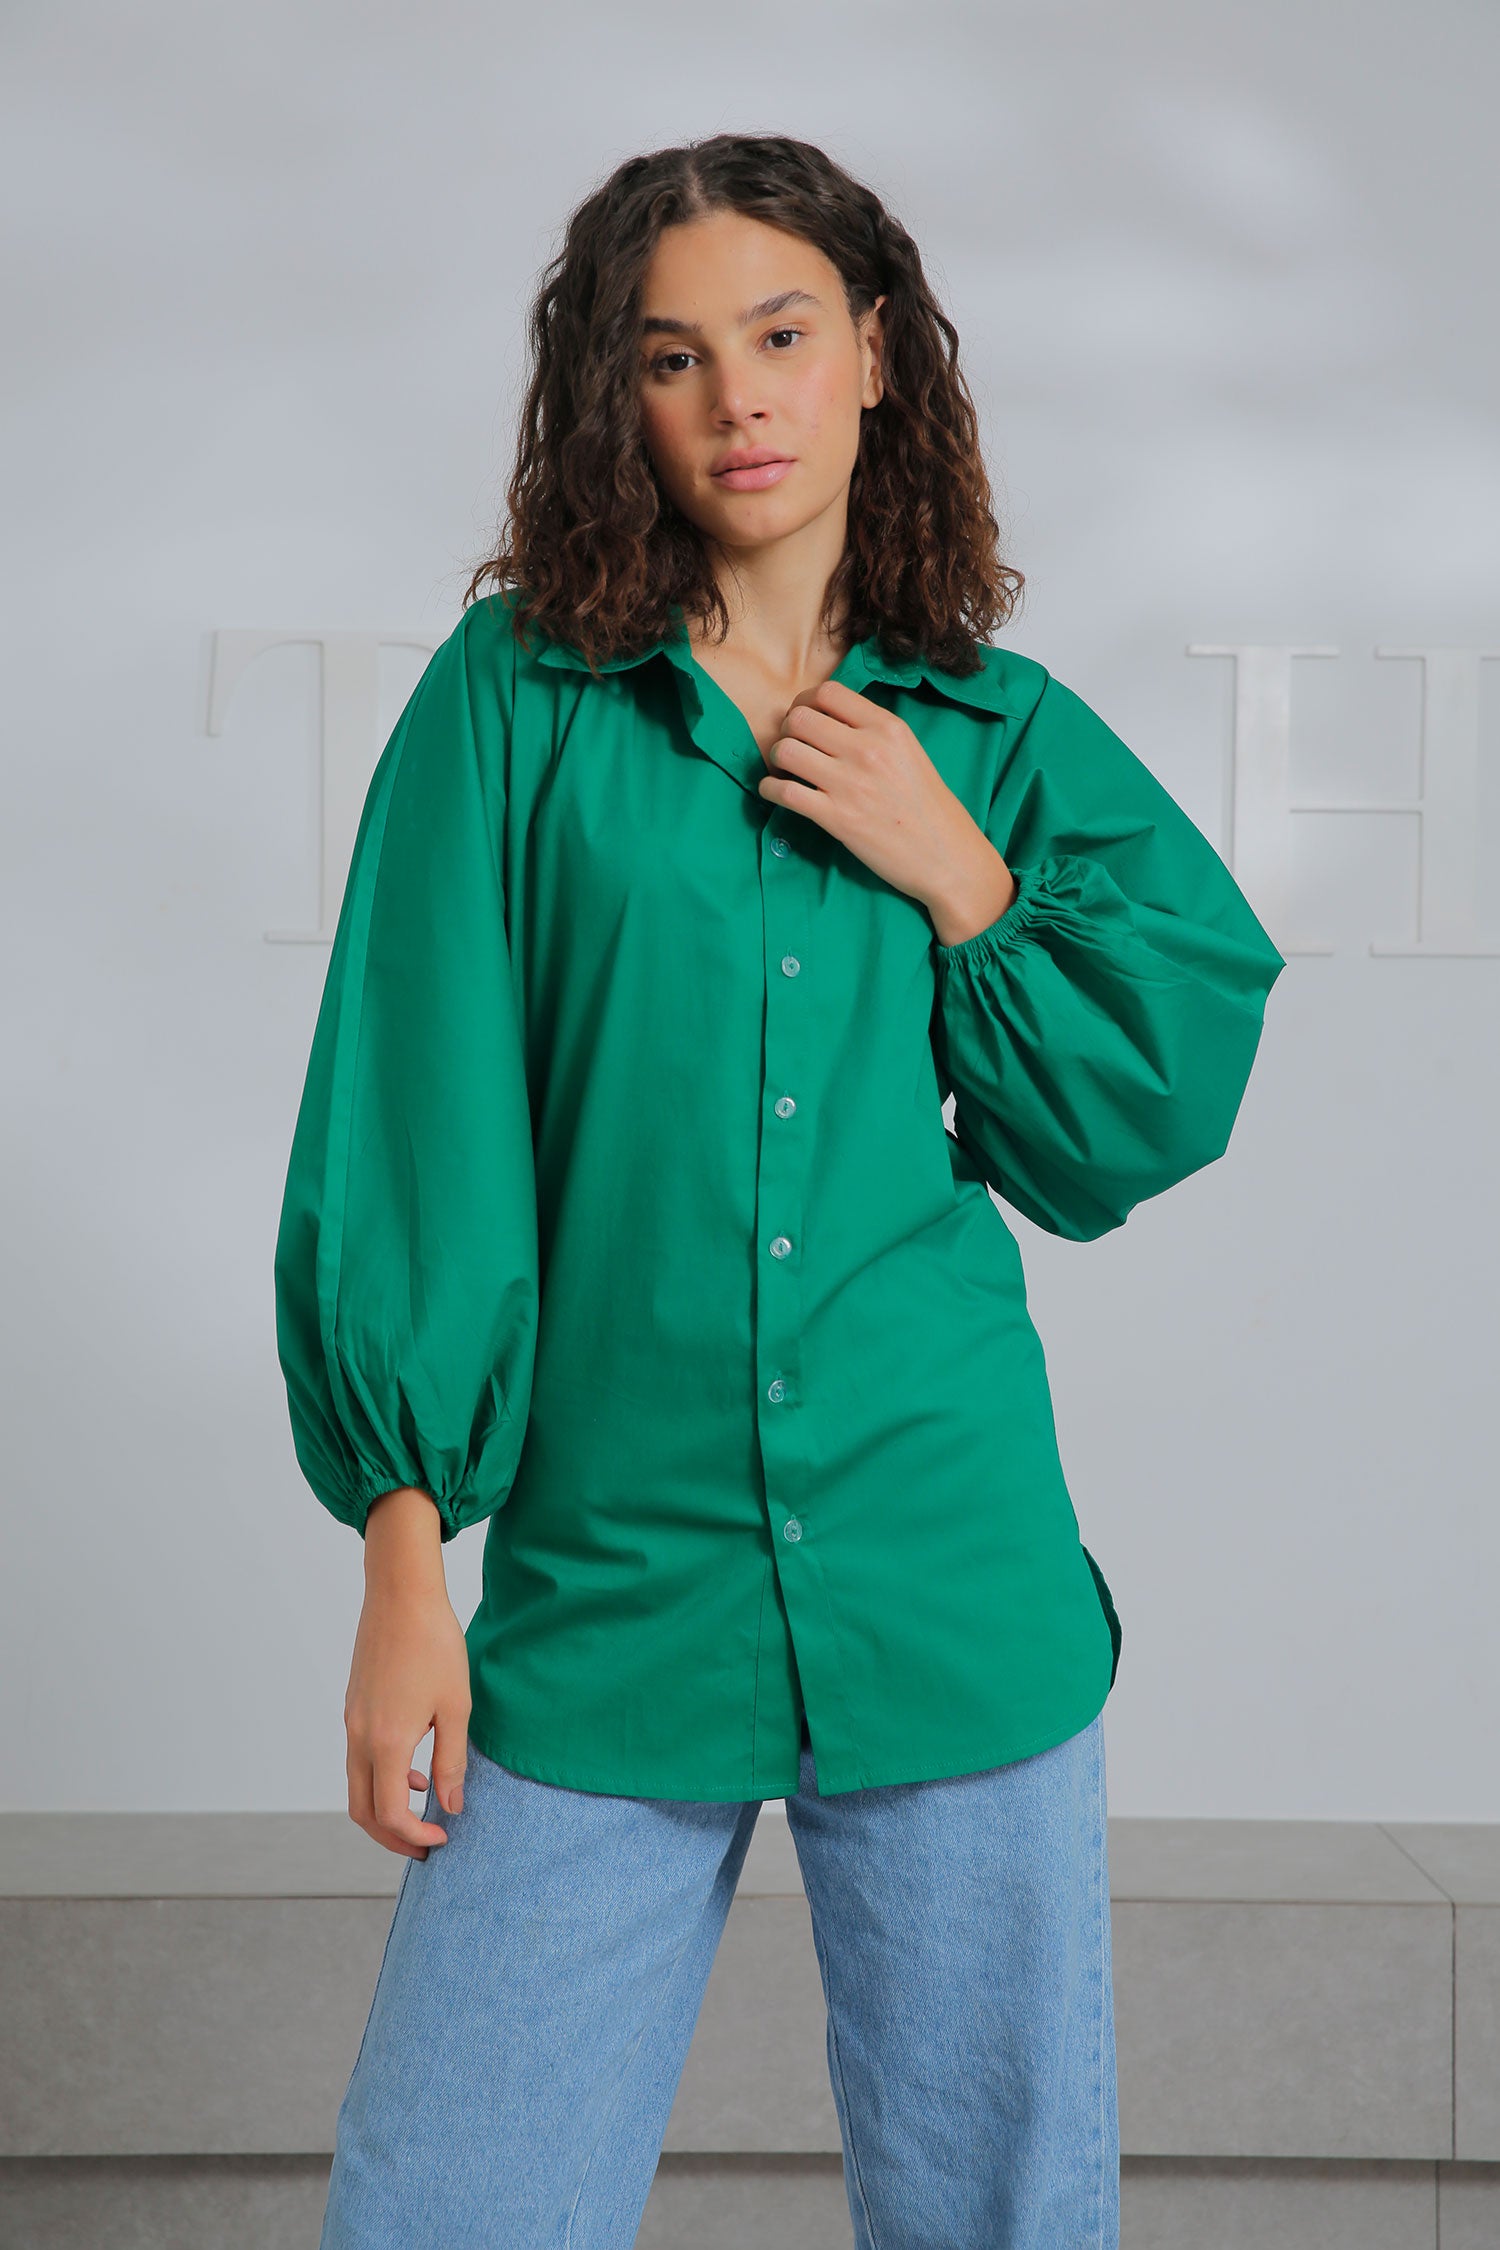 Mitcha Label Puffed Shirt